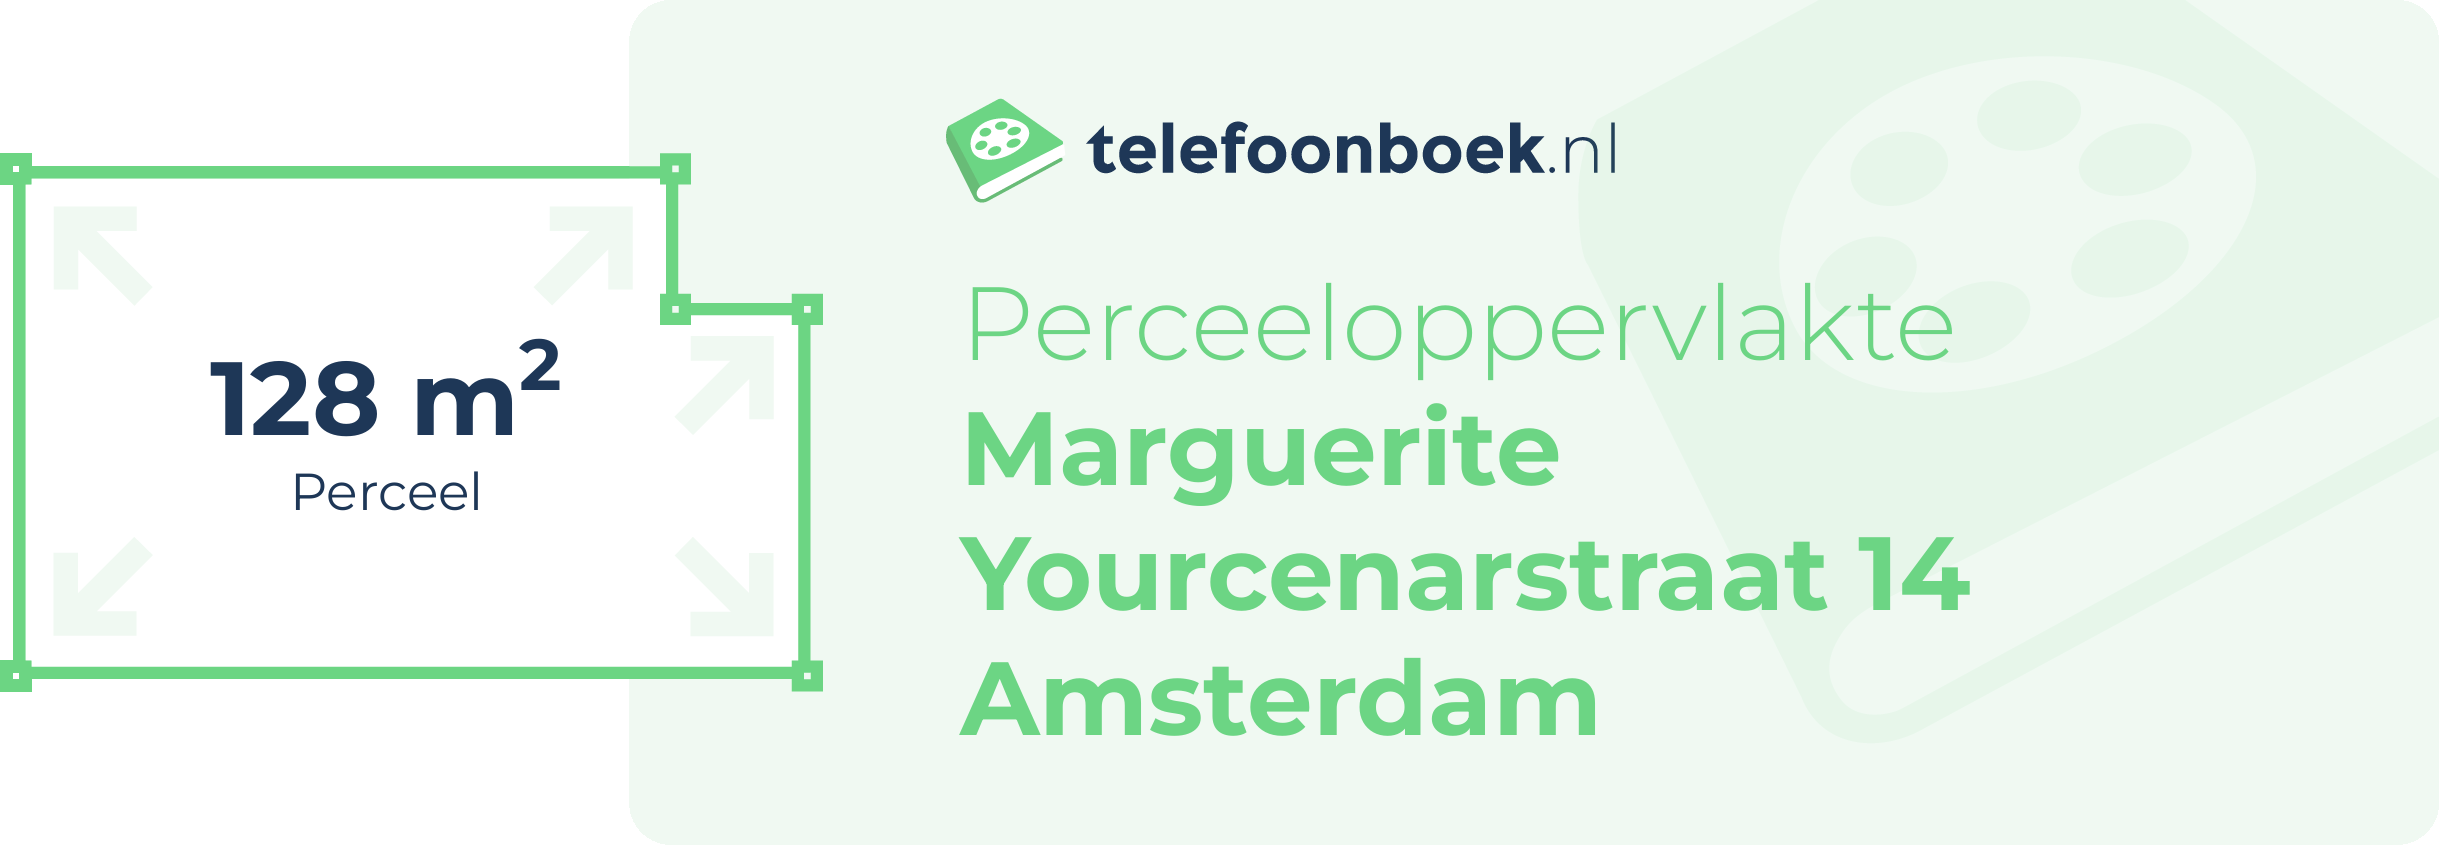 Perceeloppervlakte Marguerite Yourcenarstraat 14 Amsterdam